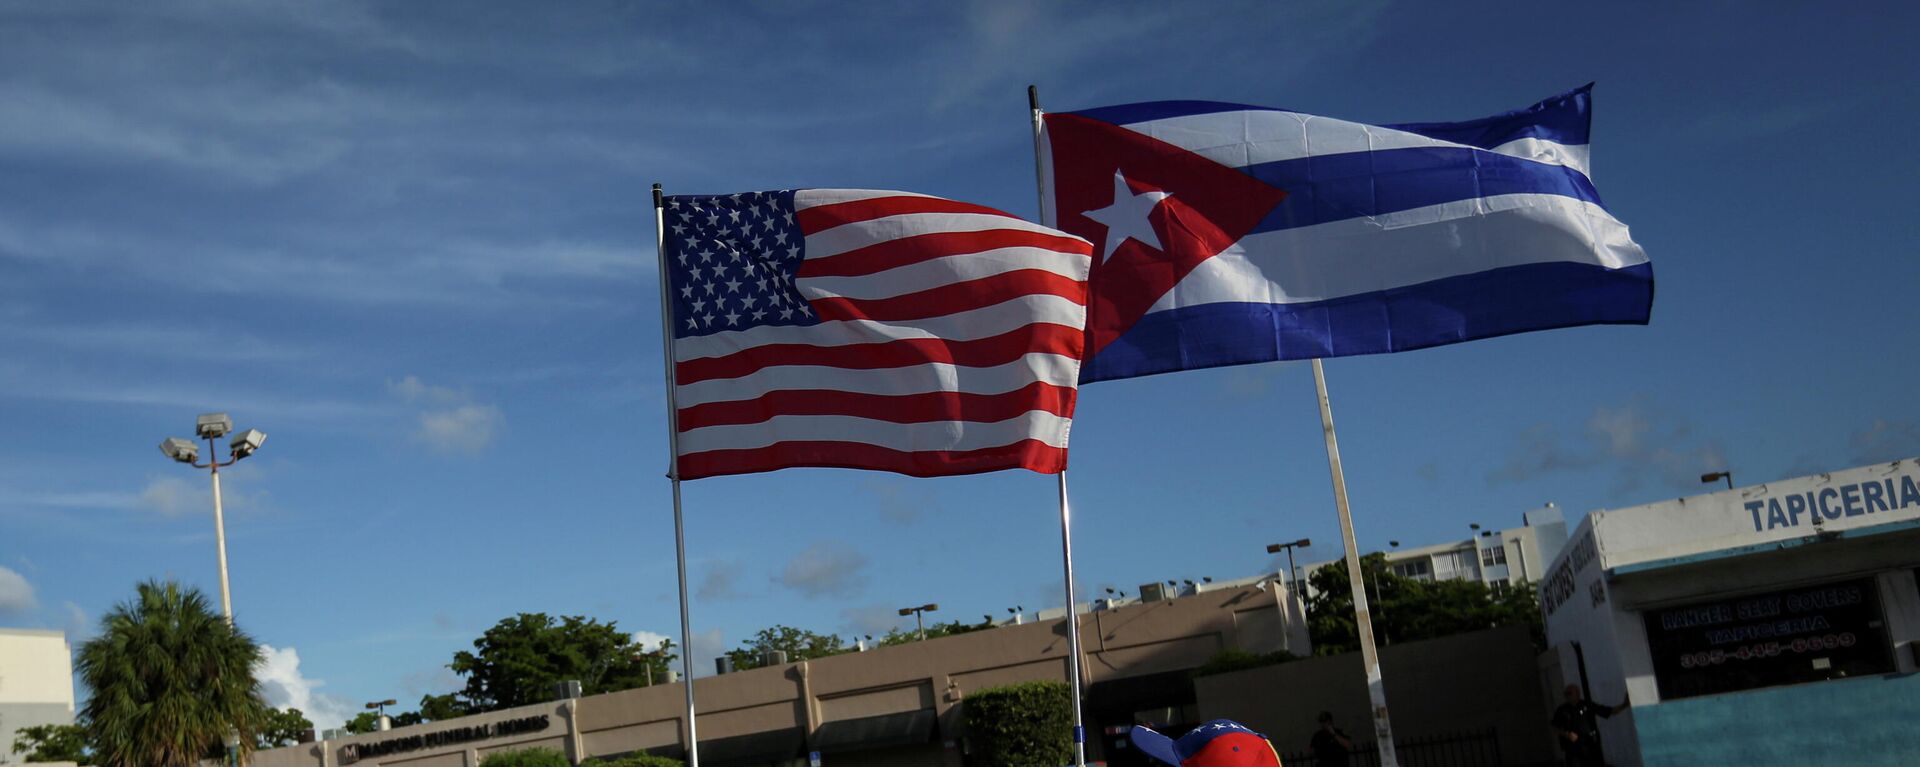 Las banderas de EEUU y Cuba - Sputnik Mundo, 1920, 11.08.2021